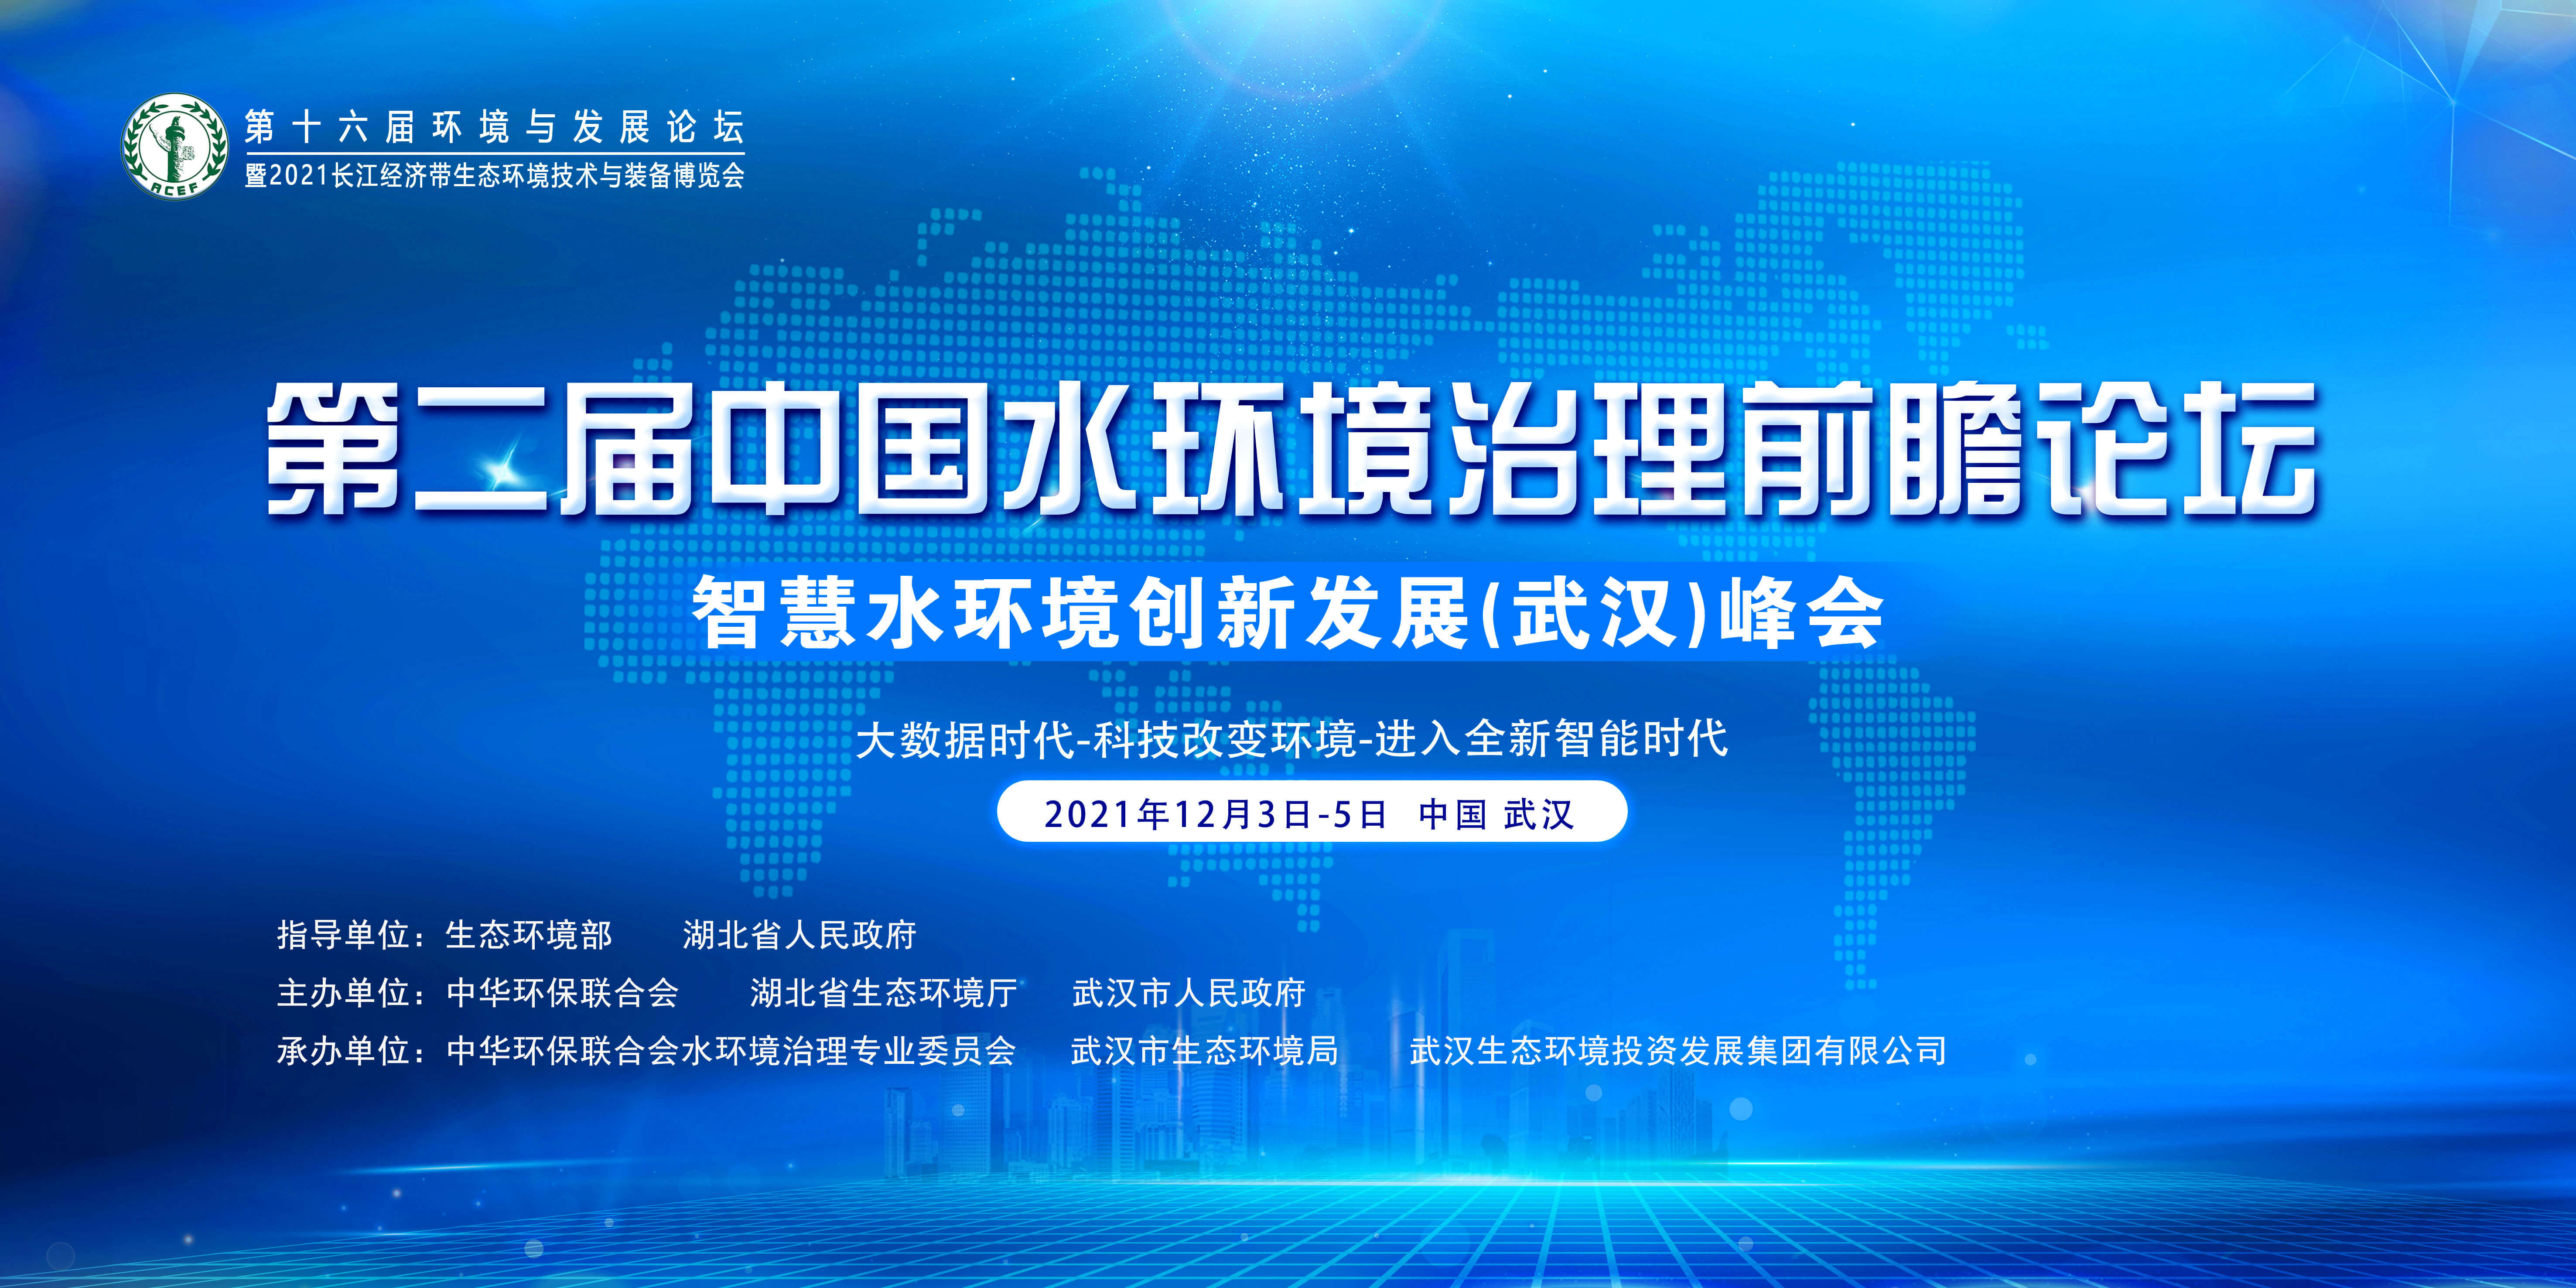 第十六届环境与发展论坛暨第二届中国水环境治理前瞻论坛智慧水环境创新发展（武汉）峰会